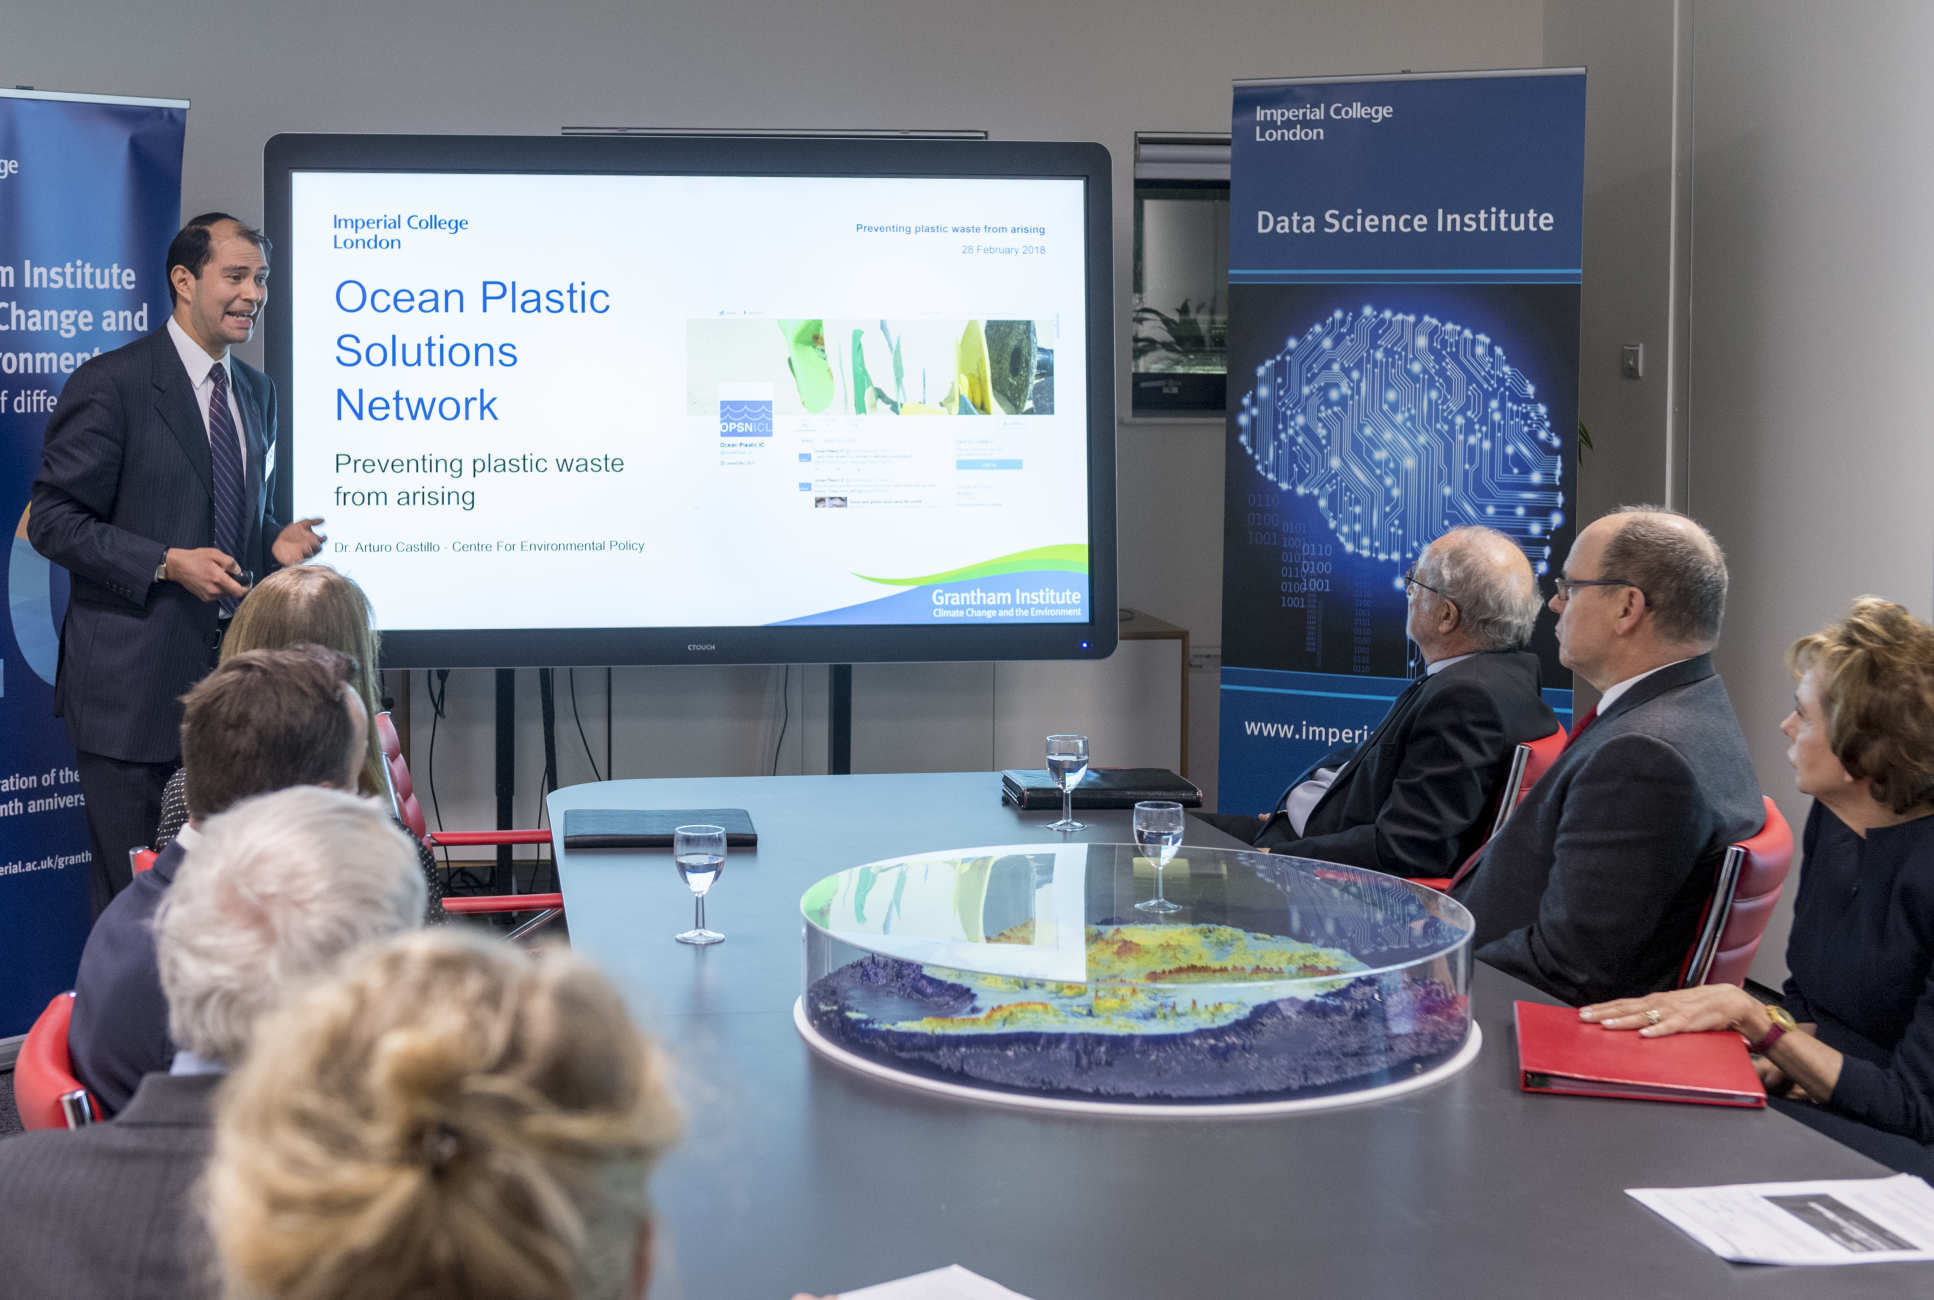 Arturo Castillo Castillo presenting the Ocean Plastic Solutions Network